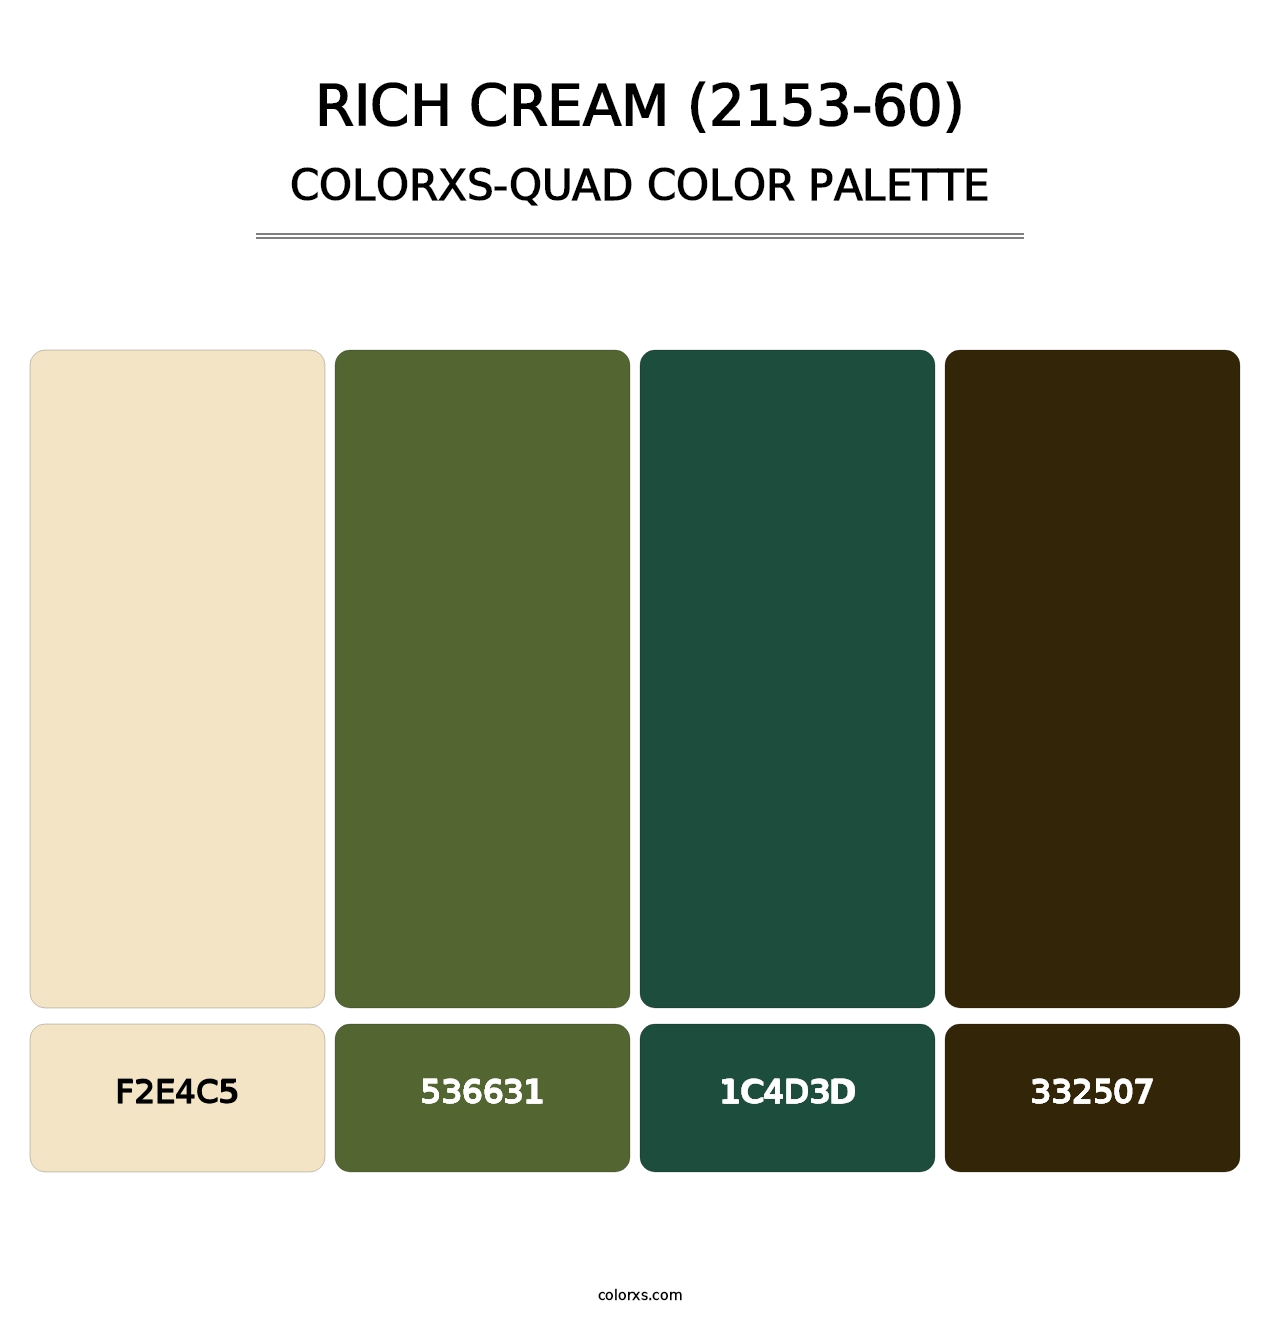 Rich Cream (2153-60) - Colorxs Quad Palette